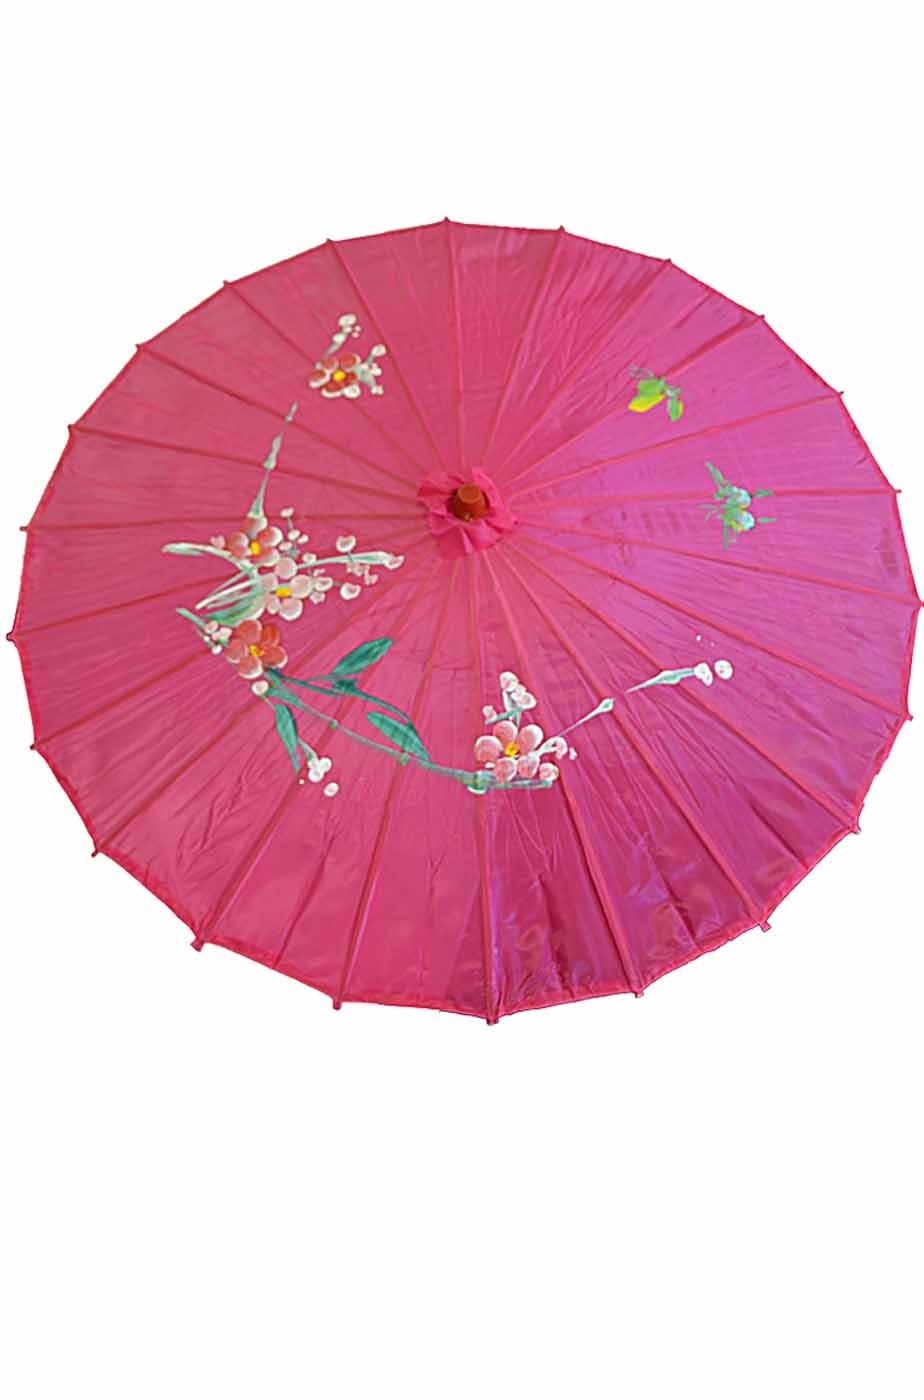 Ombrello Parasole cinese o giapponese circa 82 cm rosa